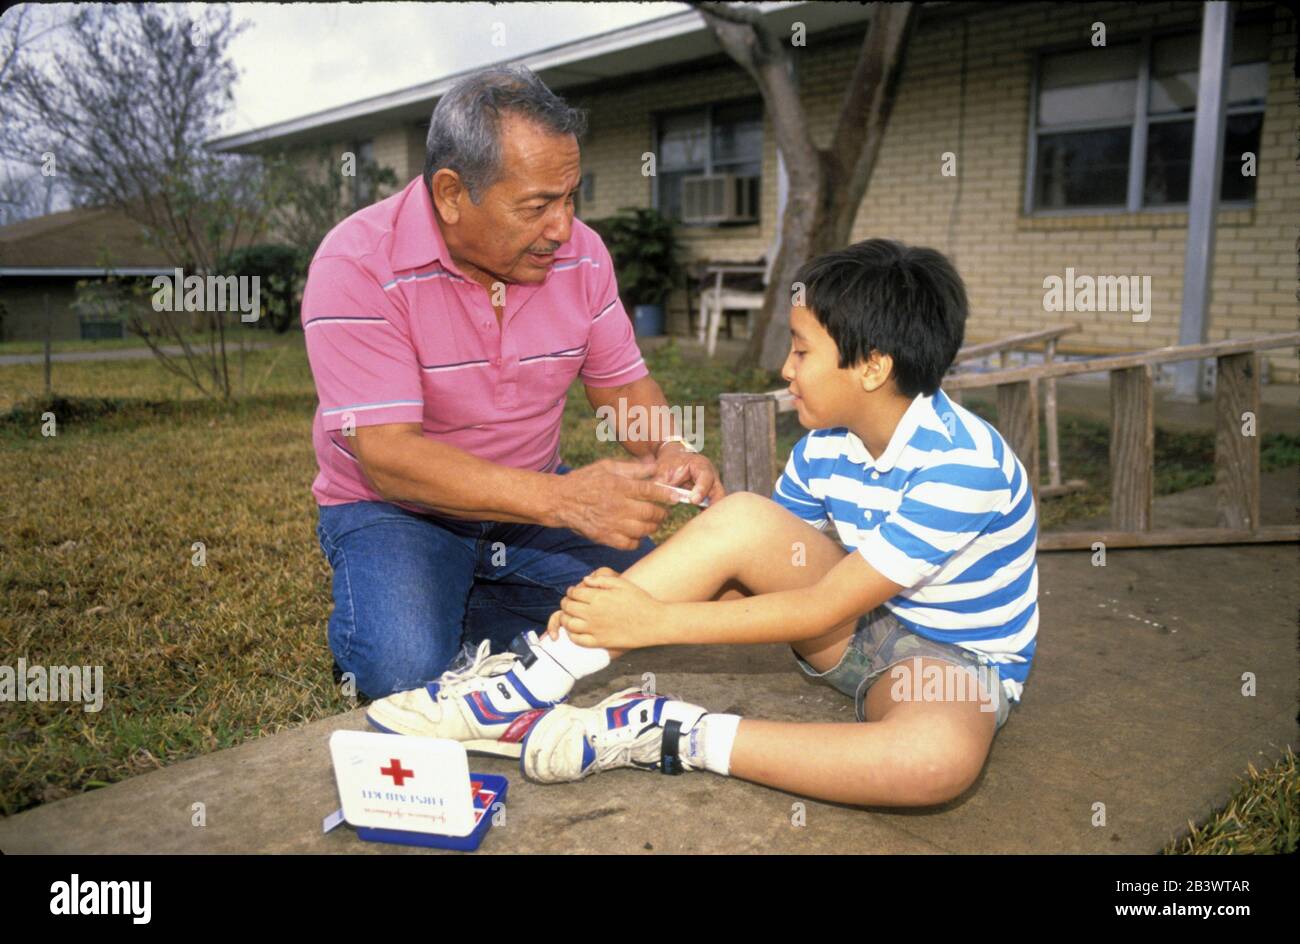 Austin Texas USA: Der Urgroßvater der USA neigt dazu, das Knie des Enkels zu verletzen. ©Bob Daemmrich Stockfoto